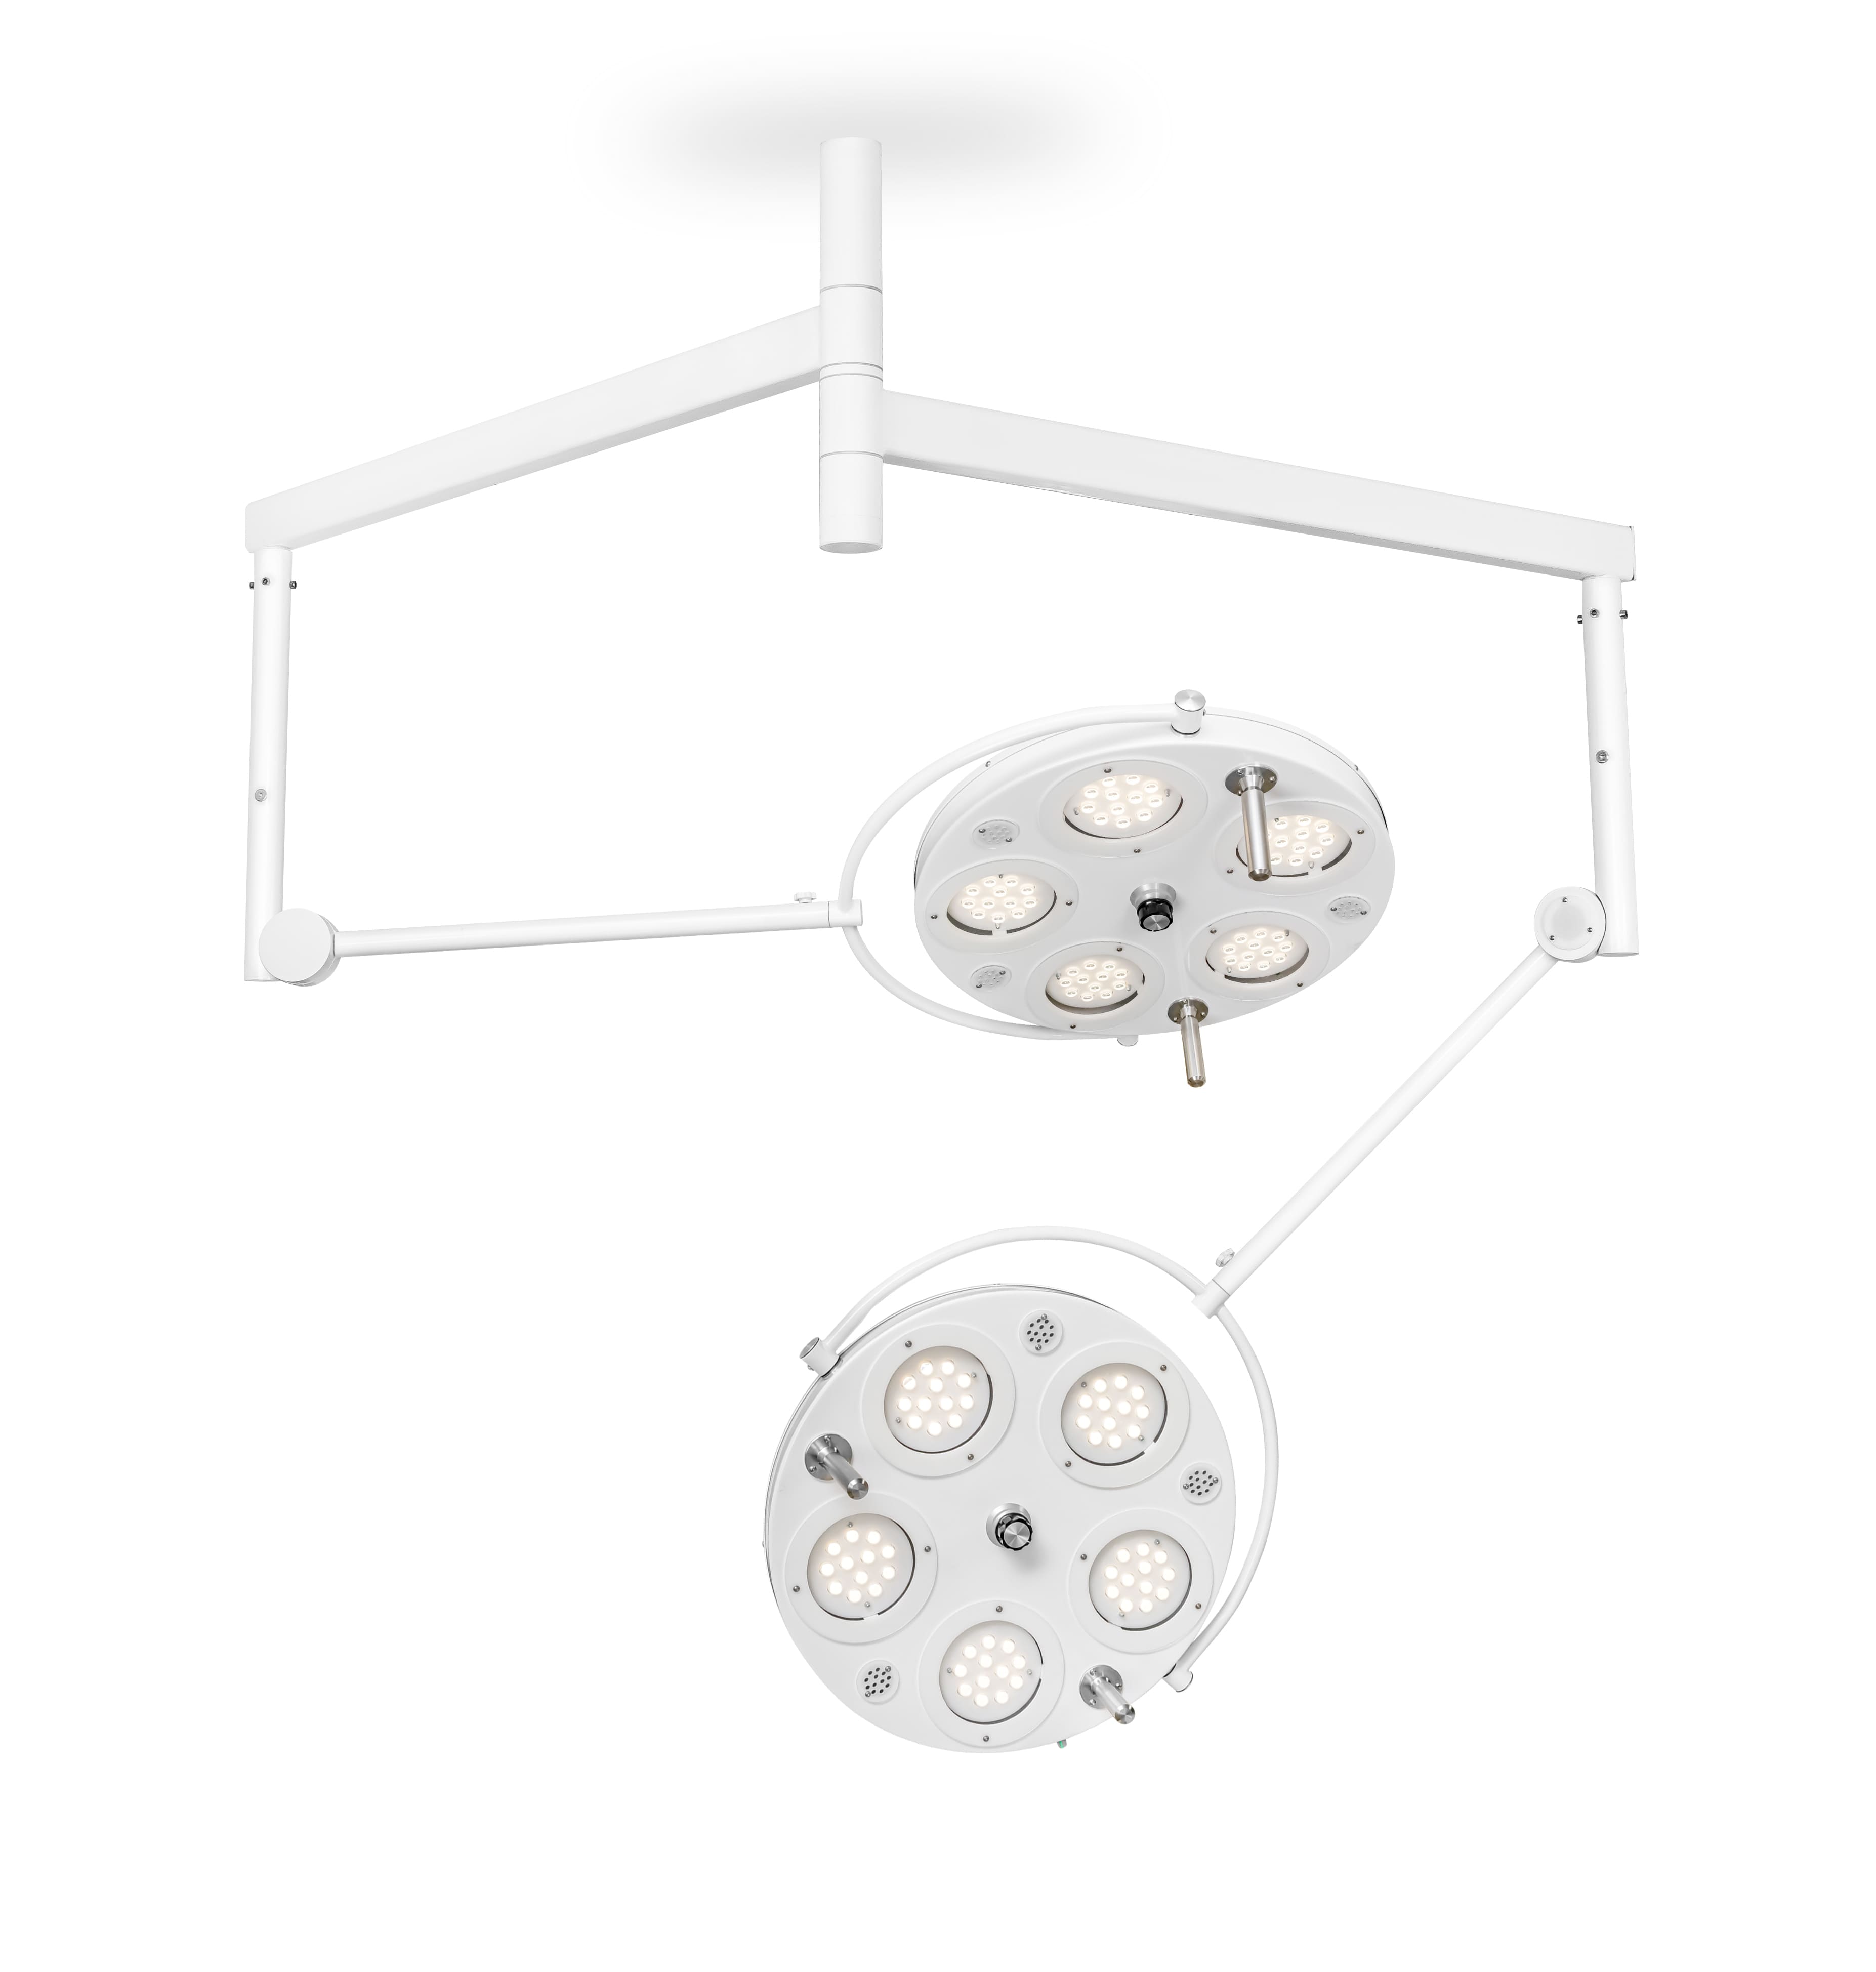 Медицинский двухкупольный хирургический светильник «FotonFly 5М5М», потолочный подвес - FotonFly 5М5М